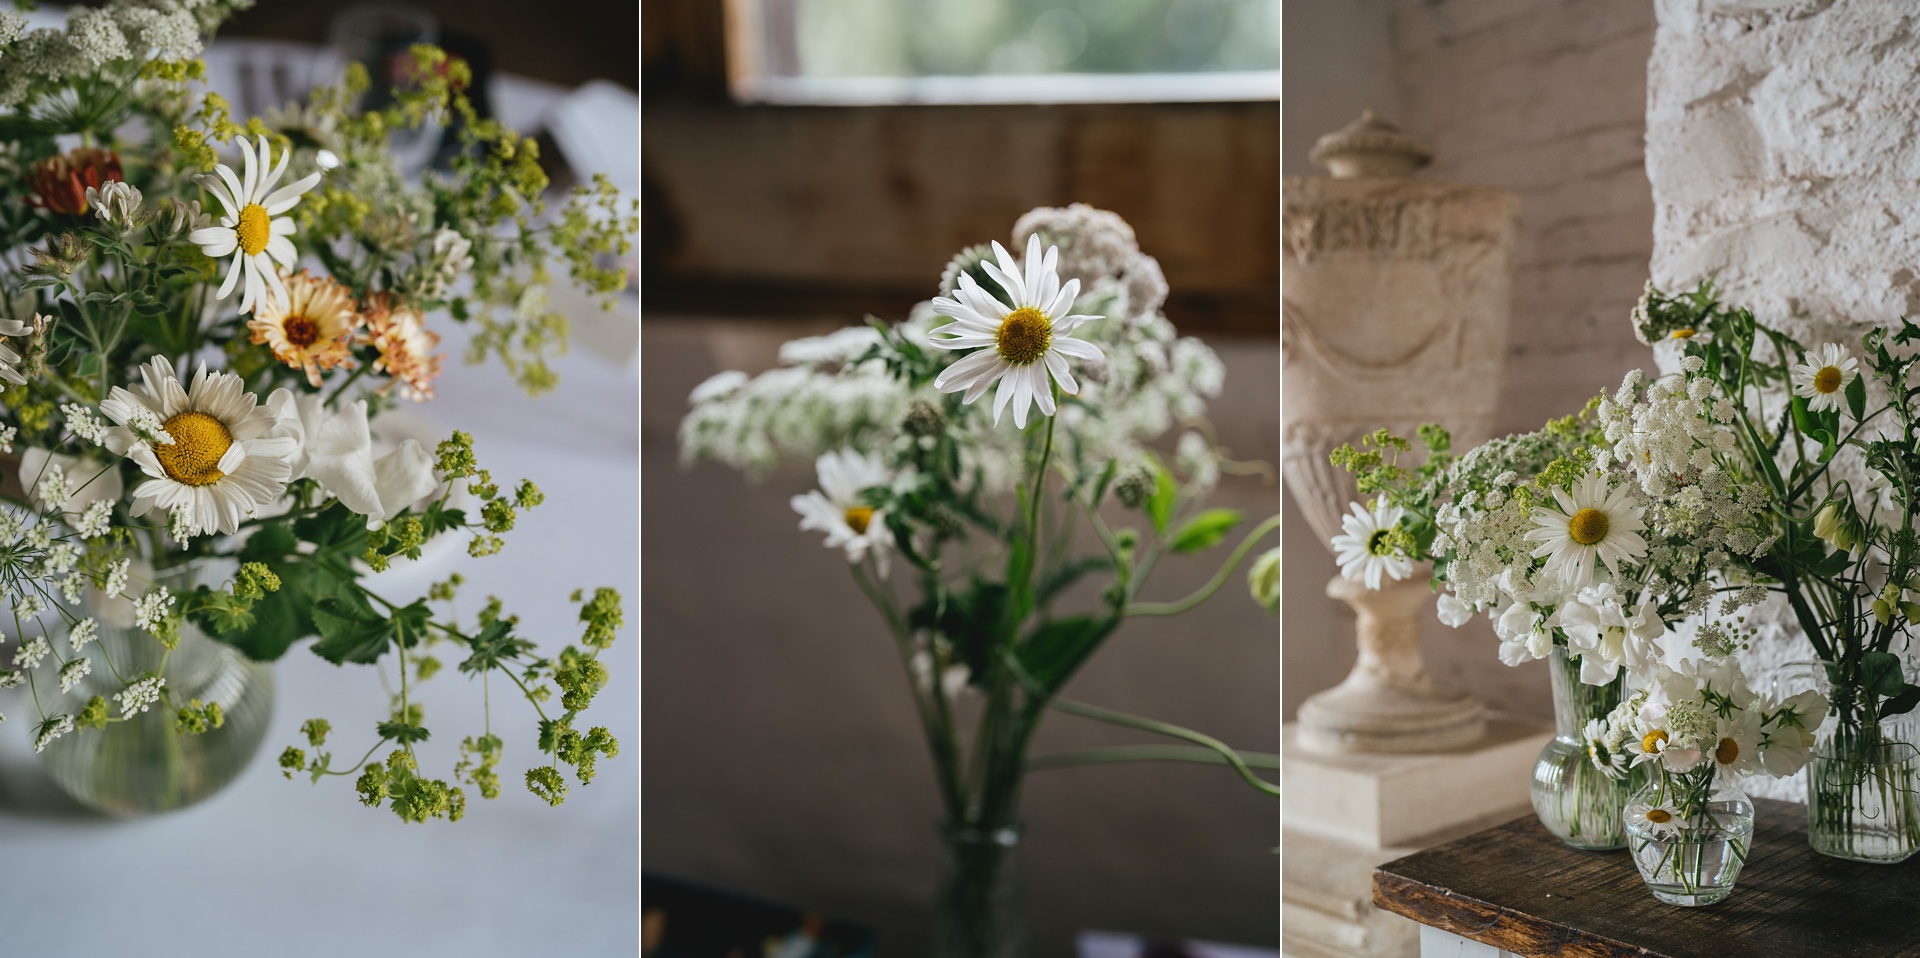 Close ups of natural floral arrangements